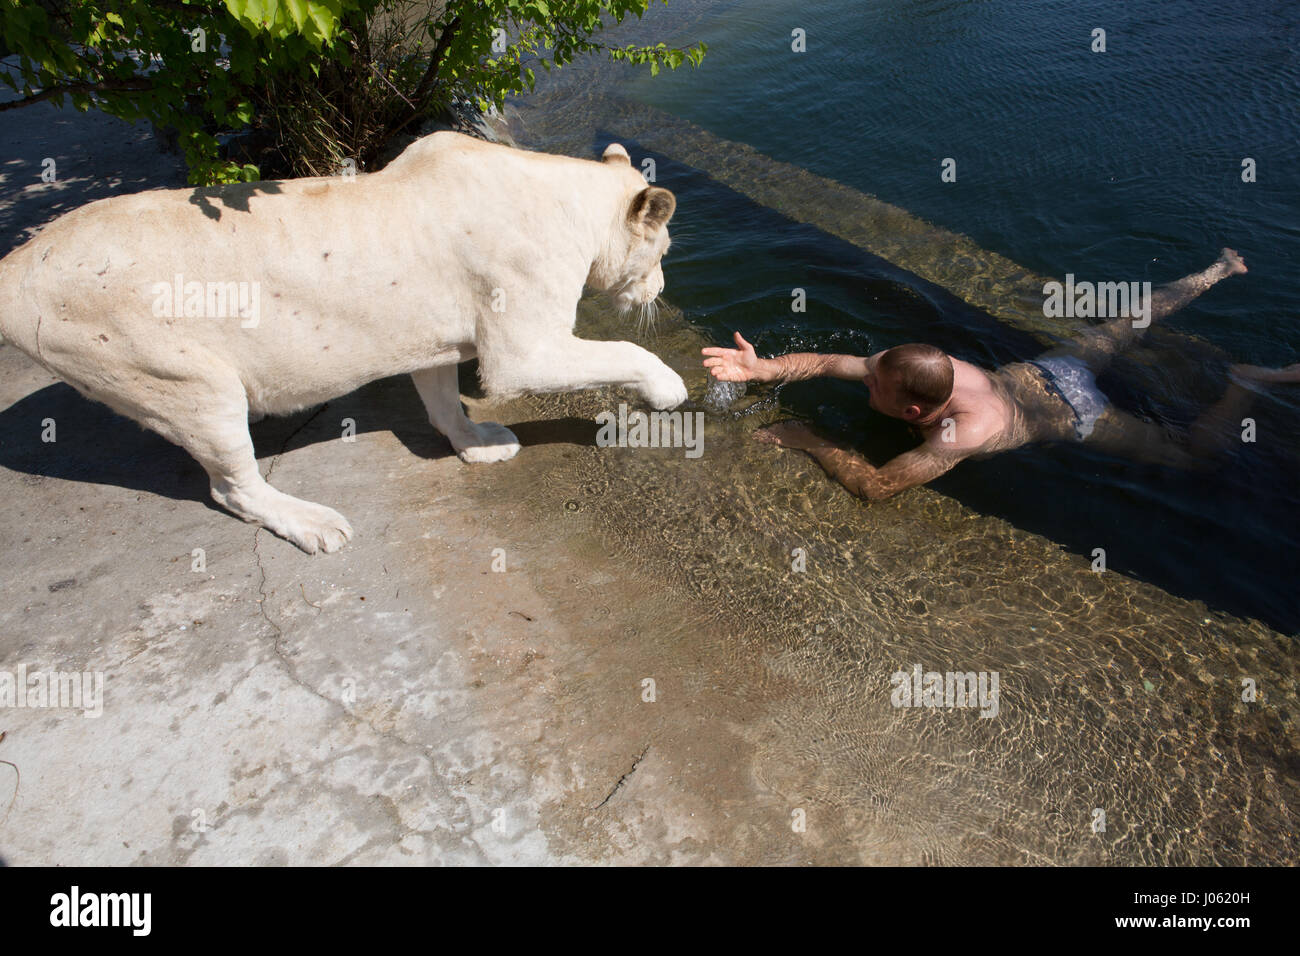 Ein weißer Löwe hilft Oleg Zubkov aus dem Wasser steigen. ATEMBERAUBENDE Bilder von wilden Löwen und furchtlosen Menschen sitzen übereinander in einem Feld wurden von einem überrascht Fotografen eingefangen. Die surrealen Bilder zeigen stellen die 418-Pfund-Löwen begrüßen ihren menschlichen Begleiter wie sie gerne für Selfies, einander küssen auf den Mund und ein weißer Löwe streckt sogar eine helfende Pfote zu einem Mann in einem Teich schwimmen.  Andere Bilder zeigen die Löwen liebevoll Gruß Menschen aus ihren Autos und ein unglaubliches Bild, ein Mann tapfer legt seinen Arm in die Bestie Mund zu stellen für die camer Stockfoto